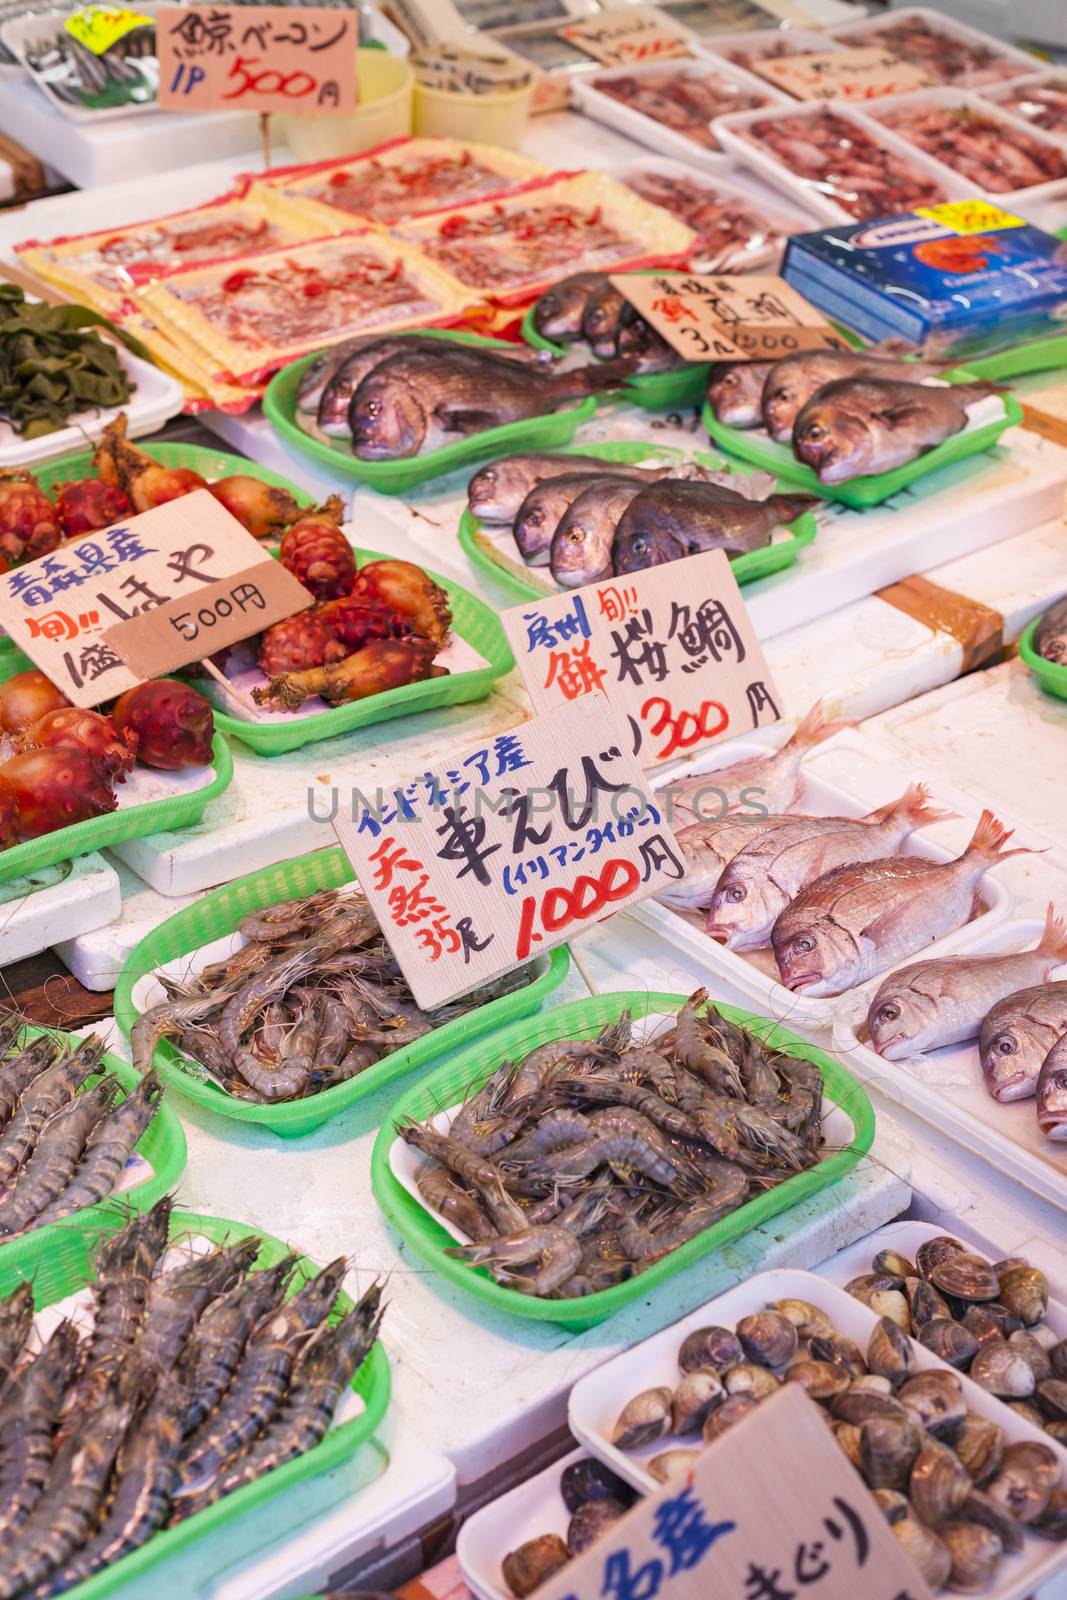 Tsukiji Fish Market, Japan. by mariusz_prusaczyk